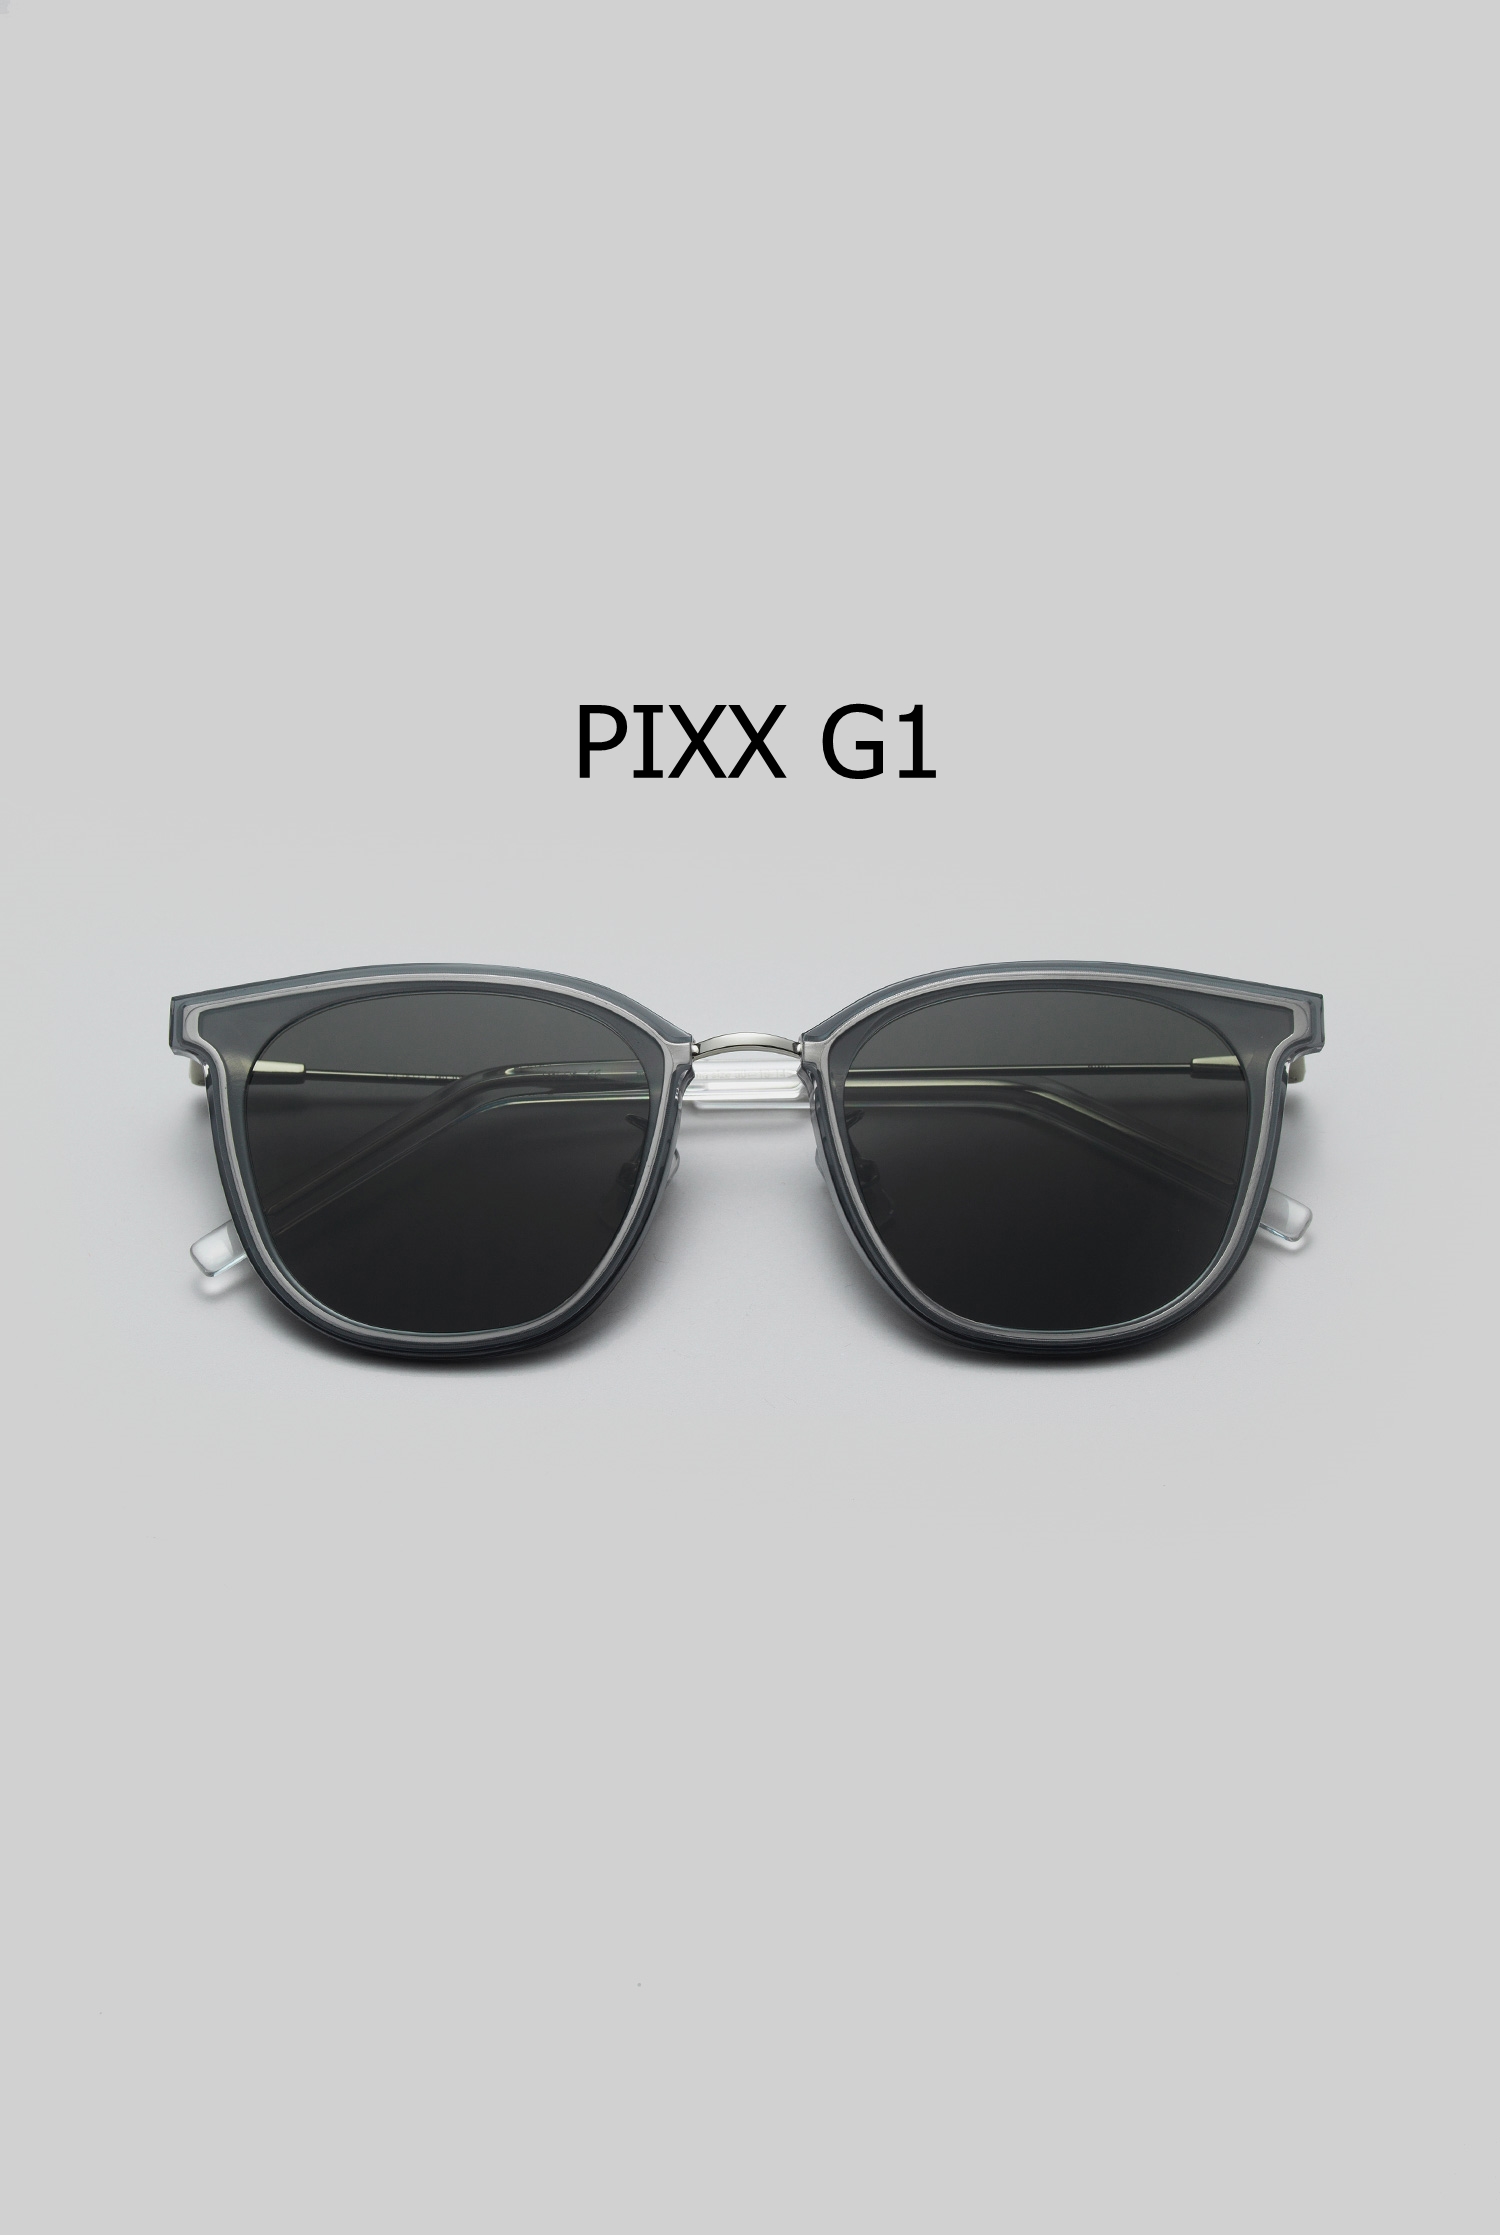 PIXX G1 